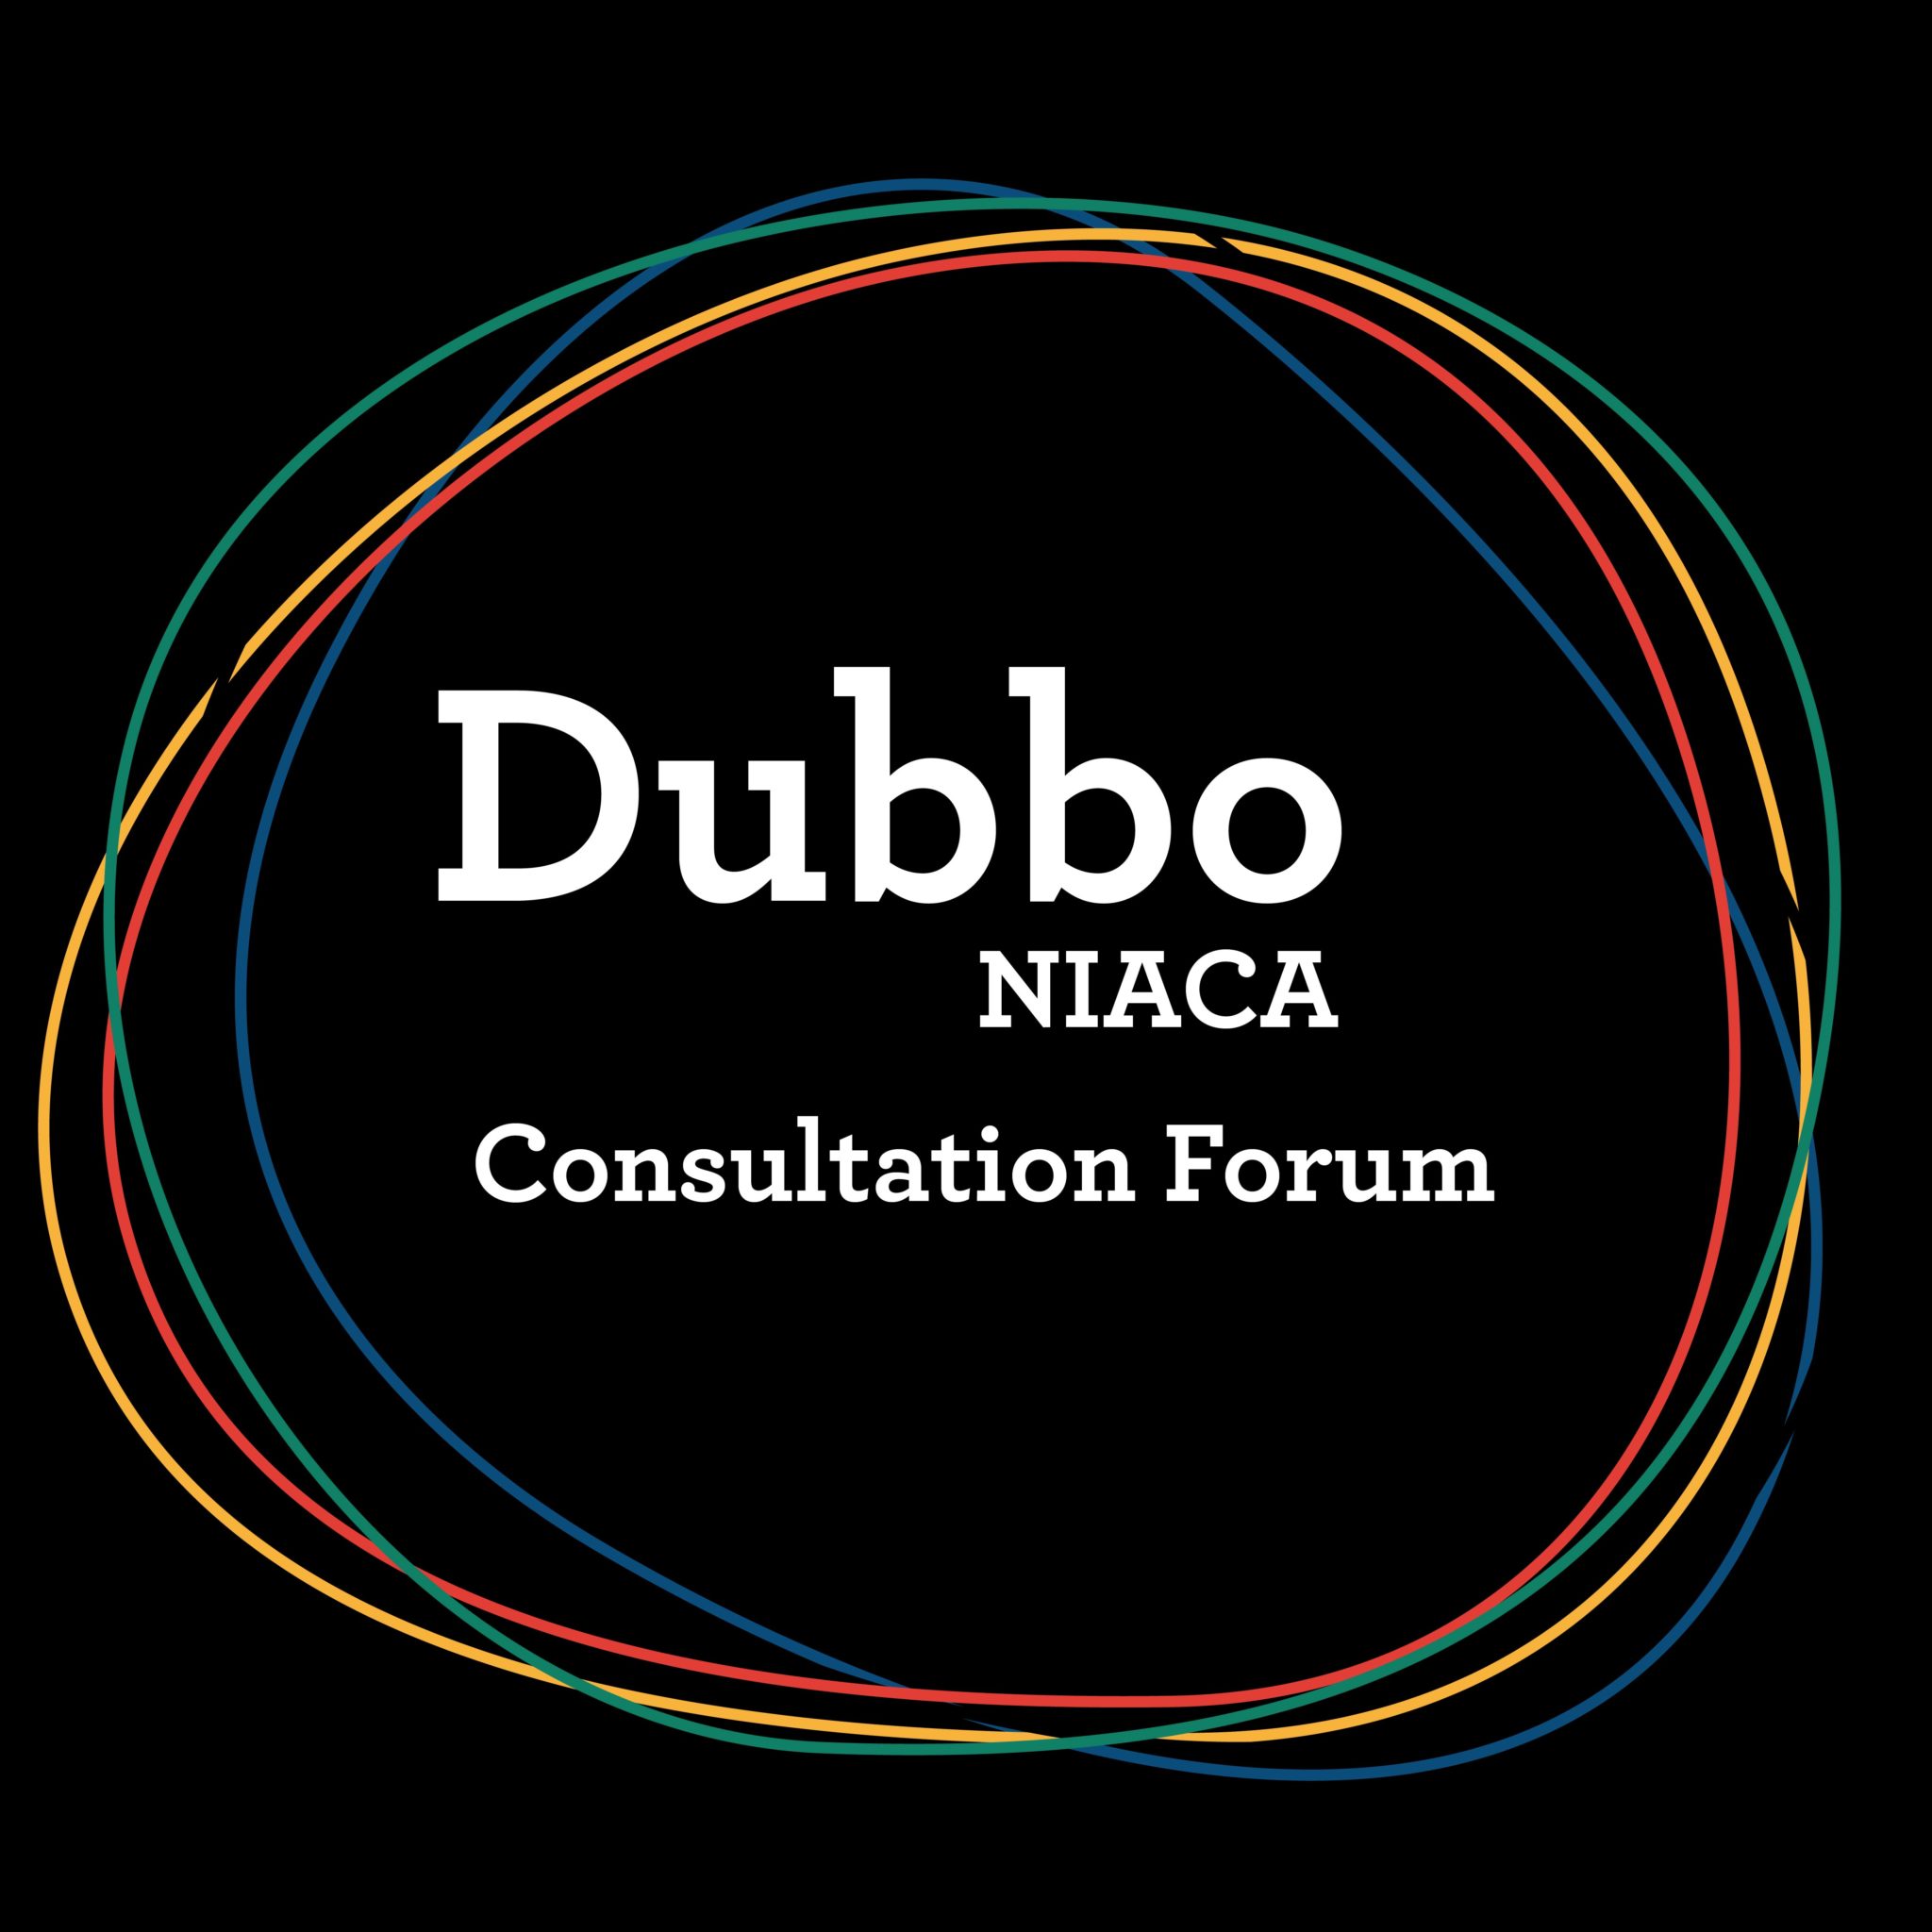 Dubbo- NIACA Consultation Forum